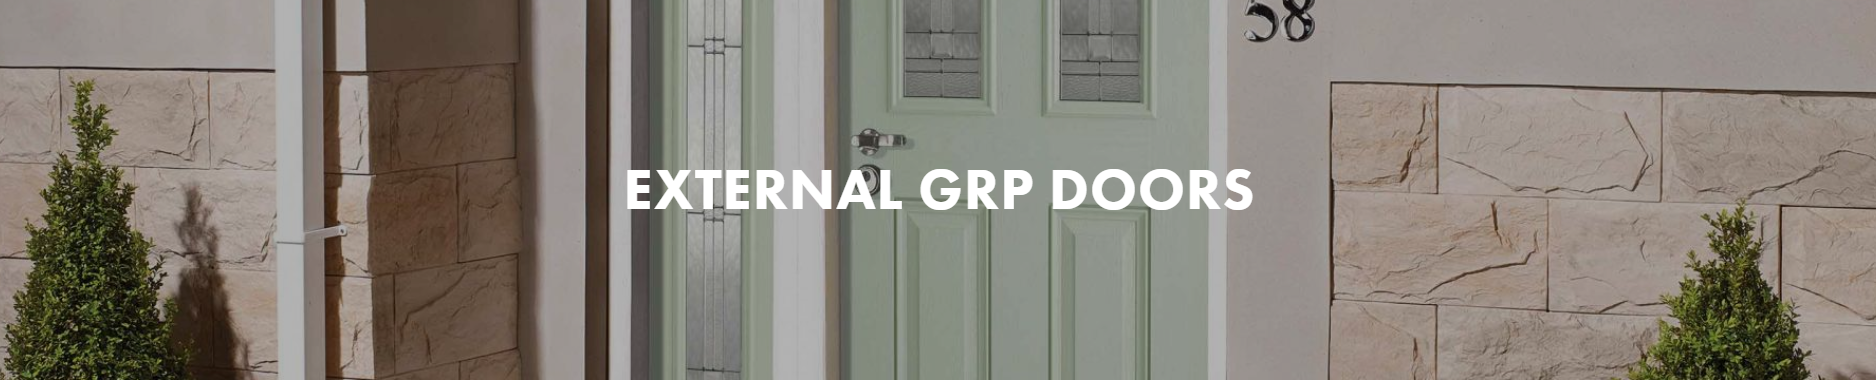 External GRP Doors